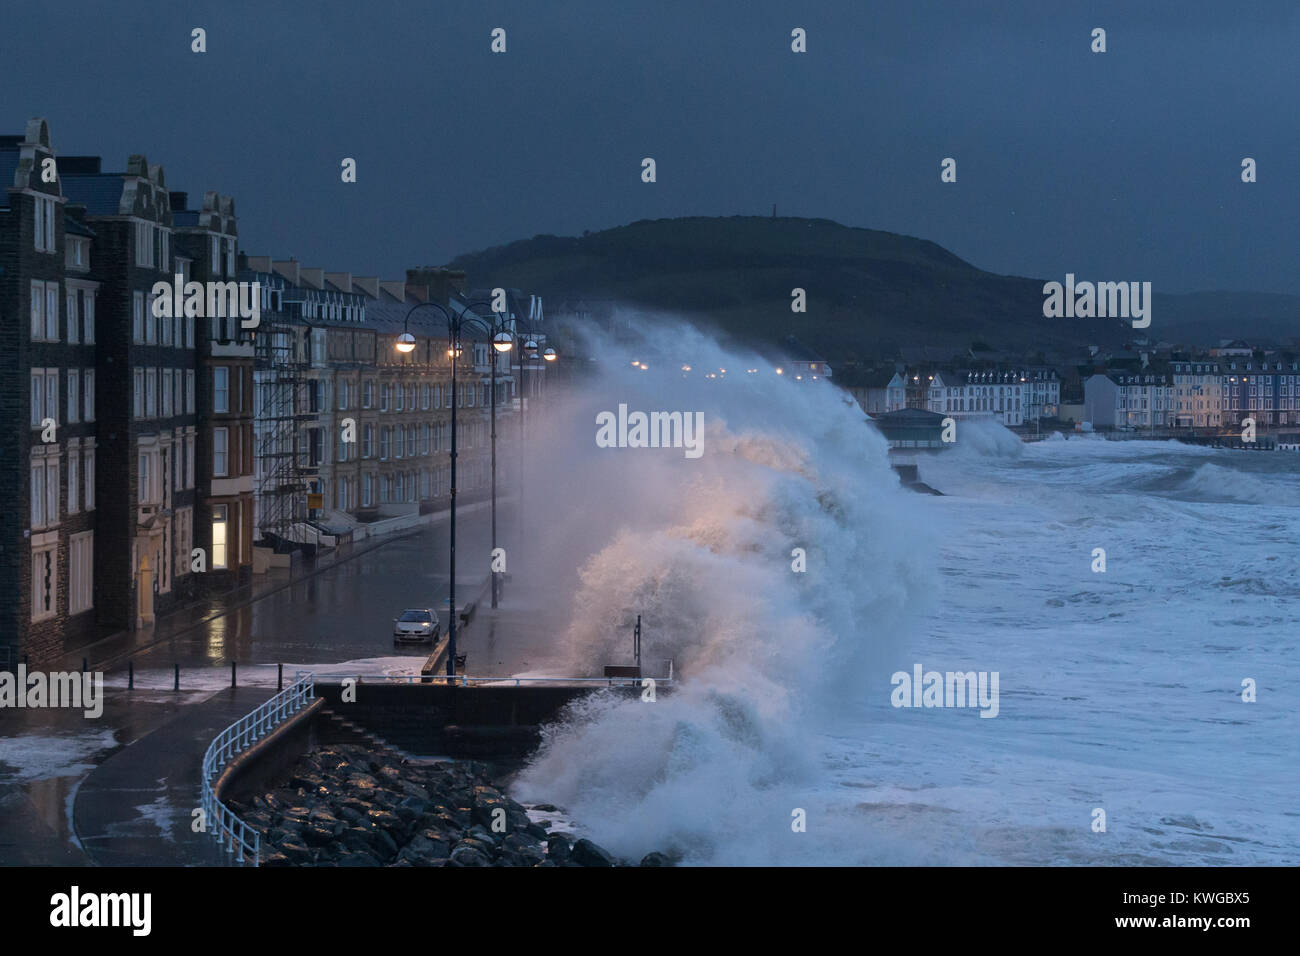 Aberystwyth, Ceredigion, Wales, UK. 03 Jan, 2018. UK Wetter: Sturm Eleanor schlägt Aberystwyth direkt am Meer, mit riesigen Wellen über die Promenade. Credit: Ian Jones/Alamy leben Nachrichten Stockfoto